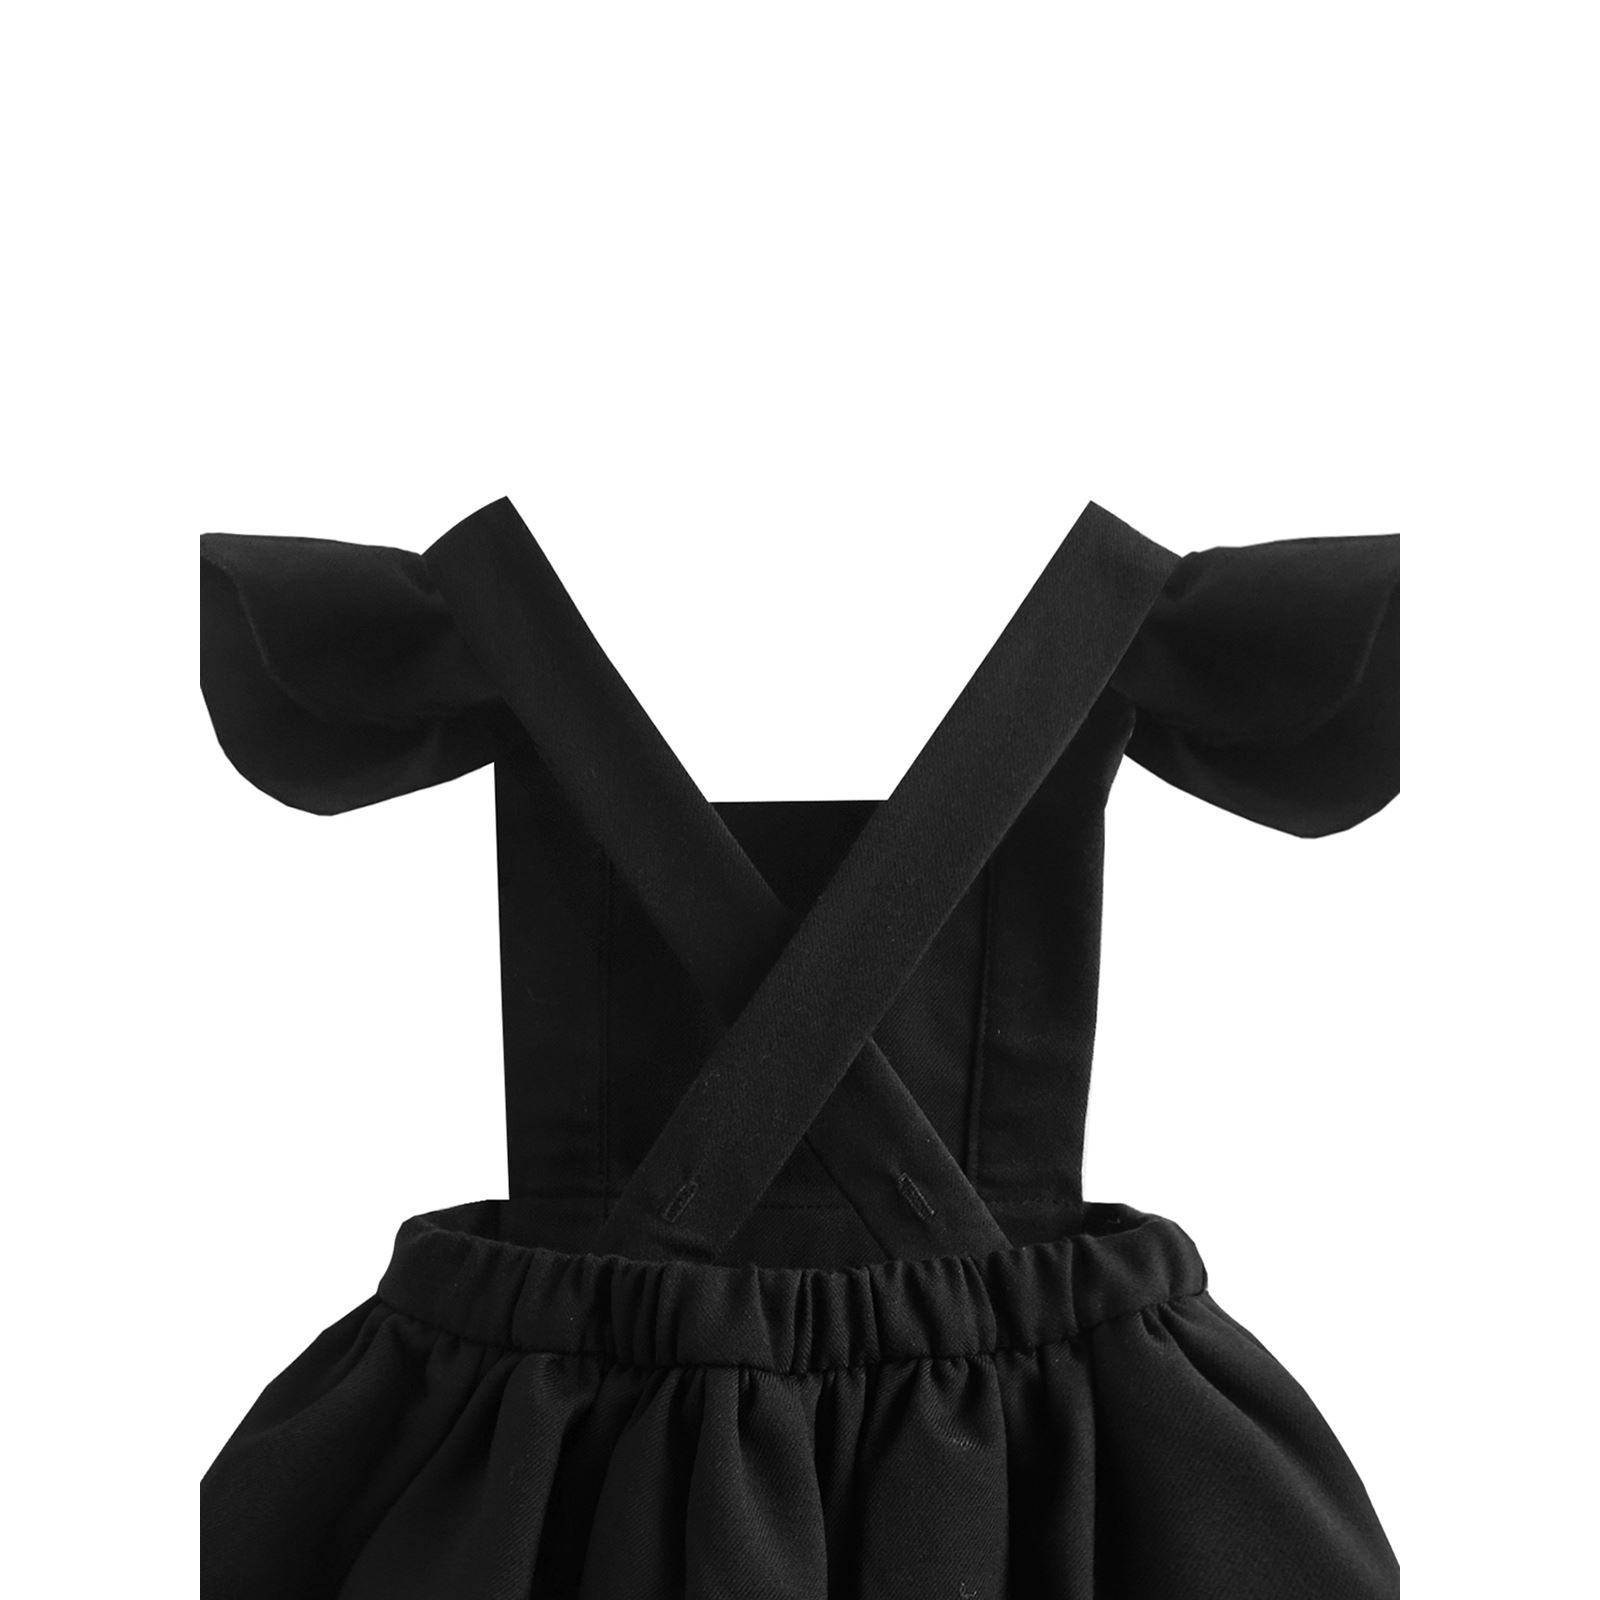 Shecco Babba Kız Çocuk Fırfırlı Tütü Elbise Taç Takım 6-10 Yaş Siyah